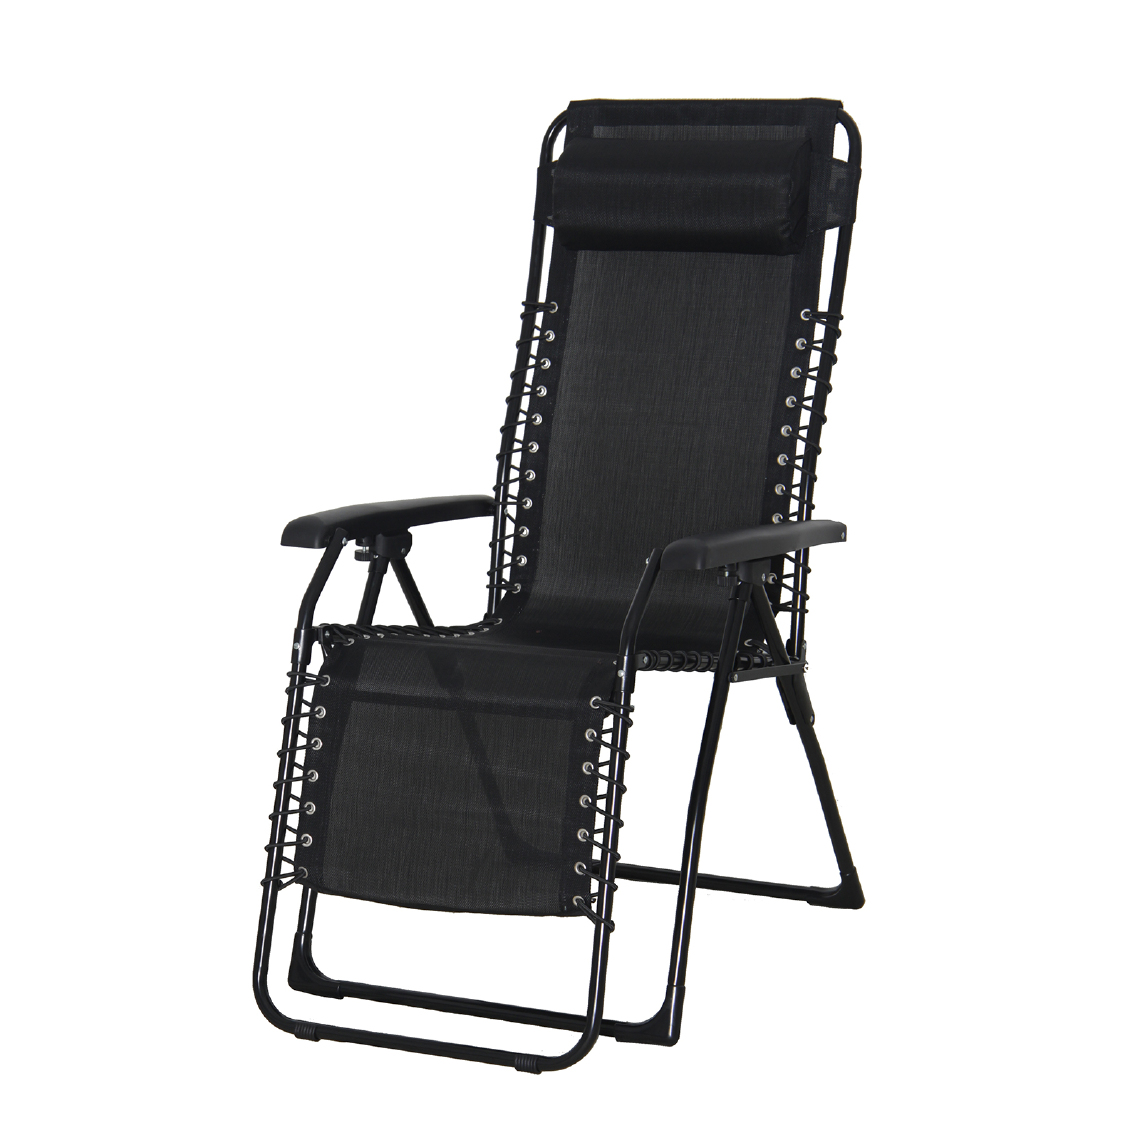 Chillvert - Chaise Longue Inclinable de Jardin Relax Chillvert Catania Acier 65,5x91x116 cm Noir avec Coussin - Transats, chaises longues